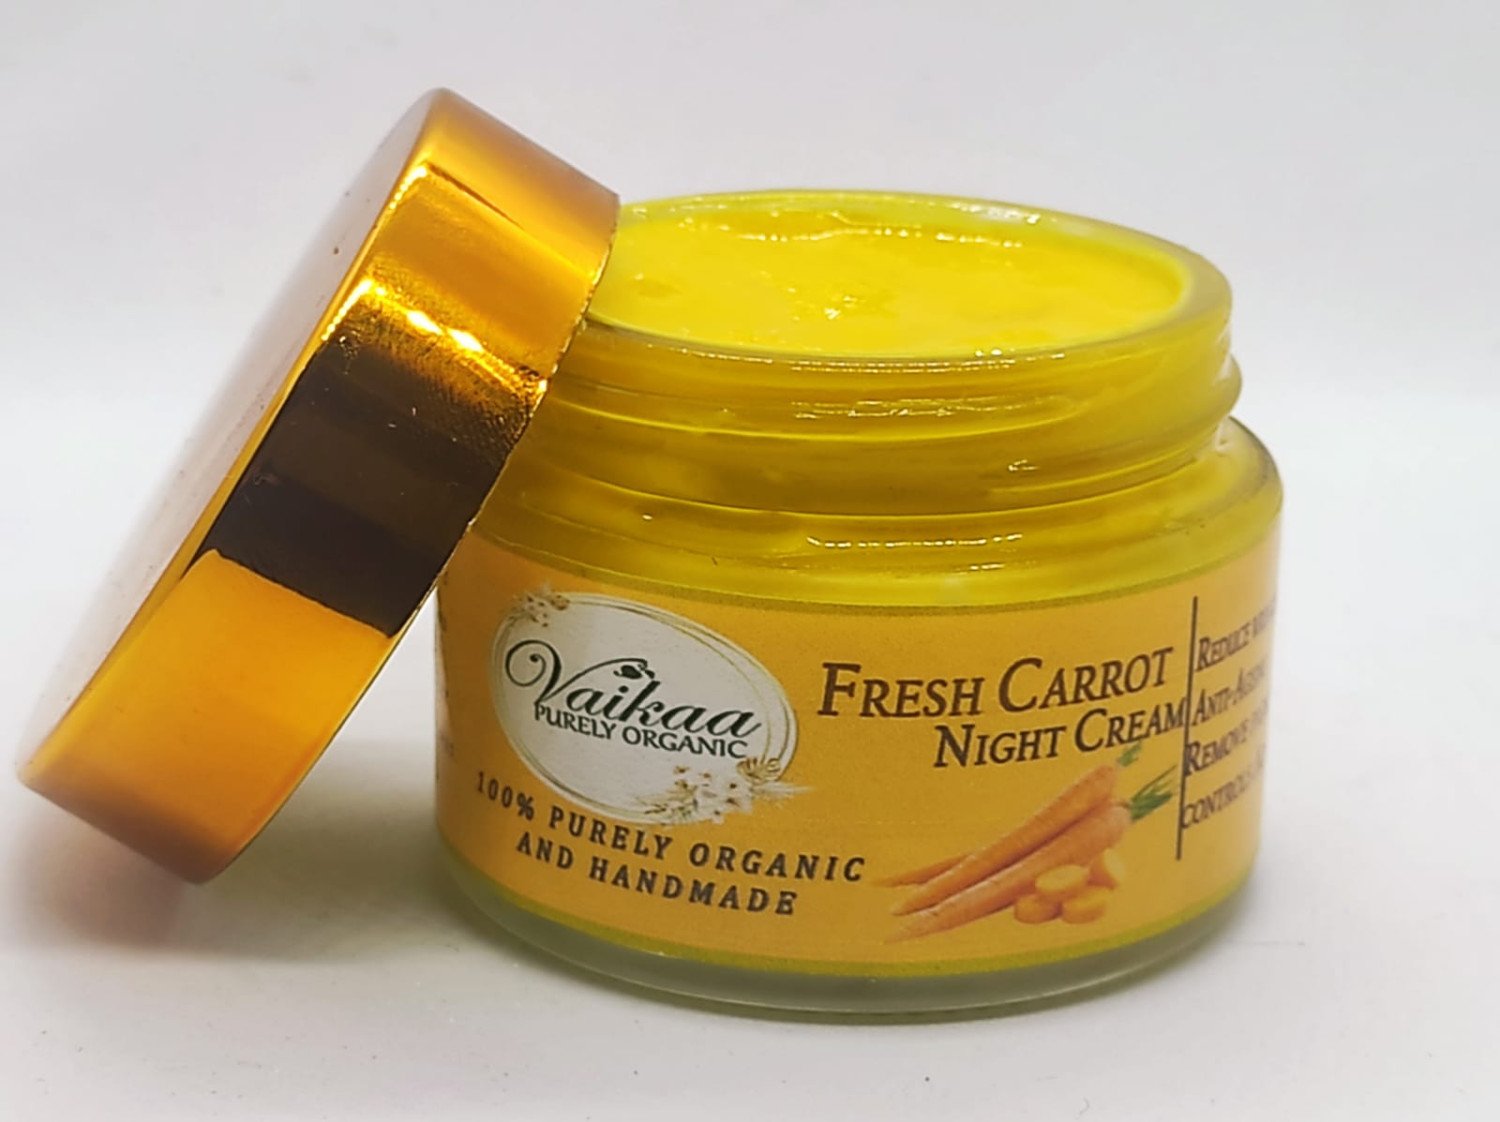 Vaikaa Organics Natural & Organic Fresh Carrot Night Cream - 100 g | Face Night Cream | Skin Whitening Cream | Skin Care Product